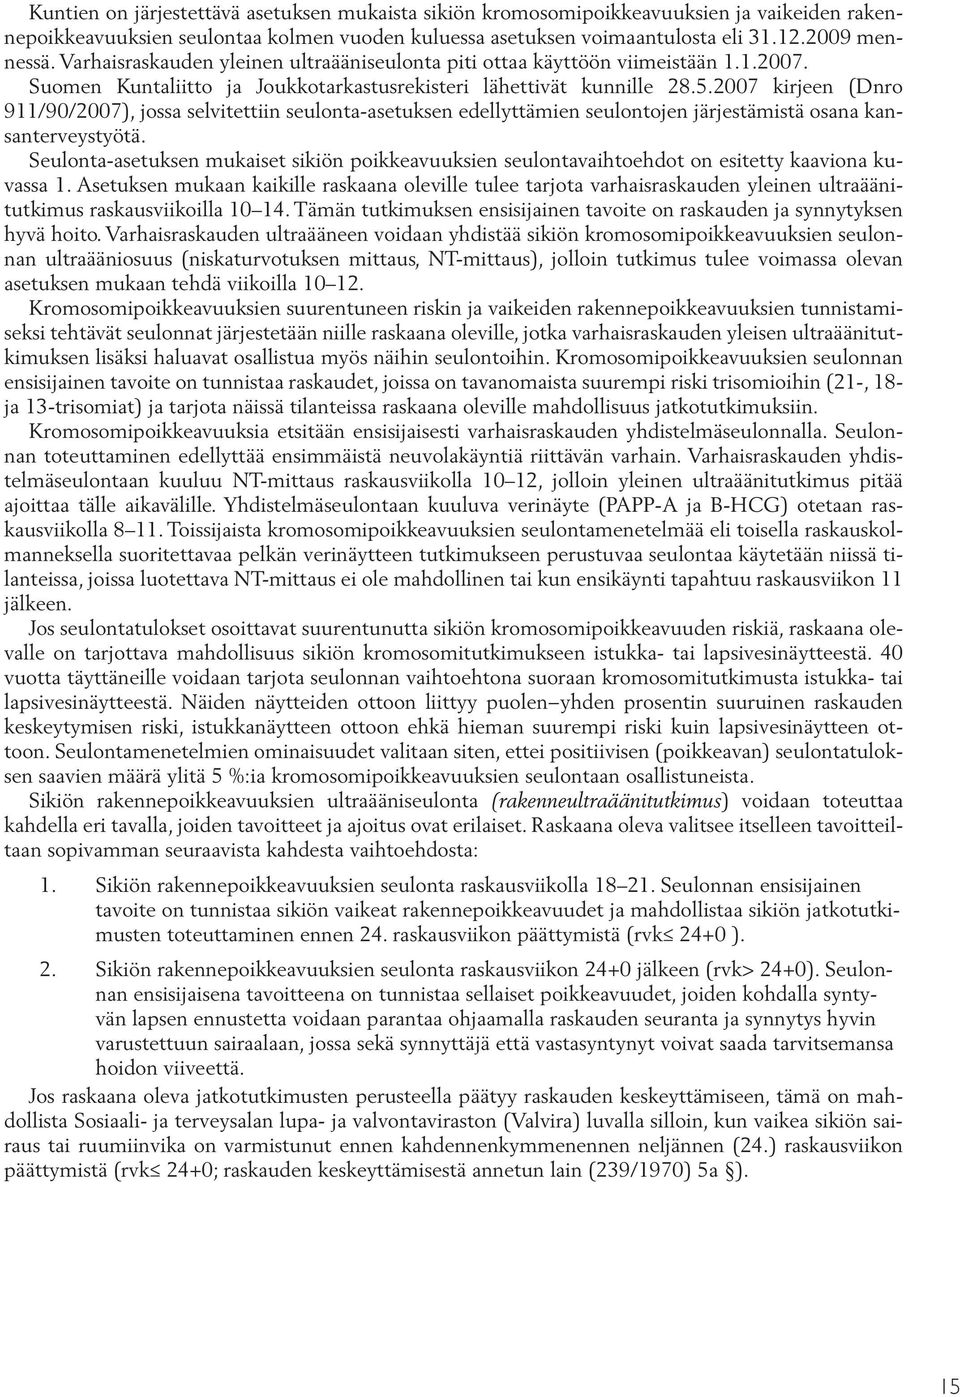 2007 kirjeen (Dnro 911/90/2007), jossa selvitettiin seulonta-asetuksen edellyttämien seulontojen järjestämistä osana kansanterveystyötä.